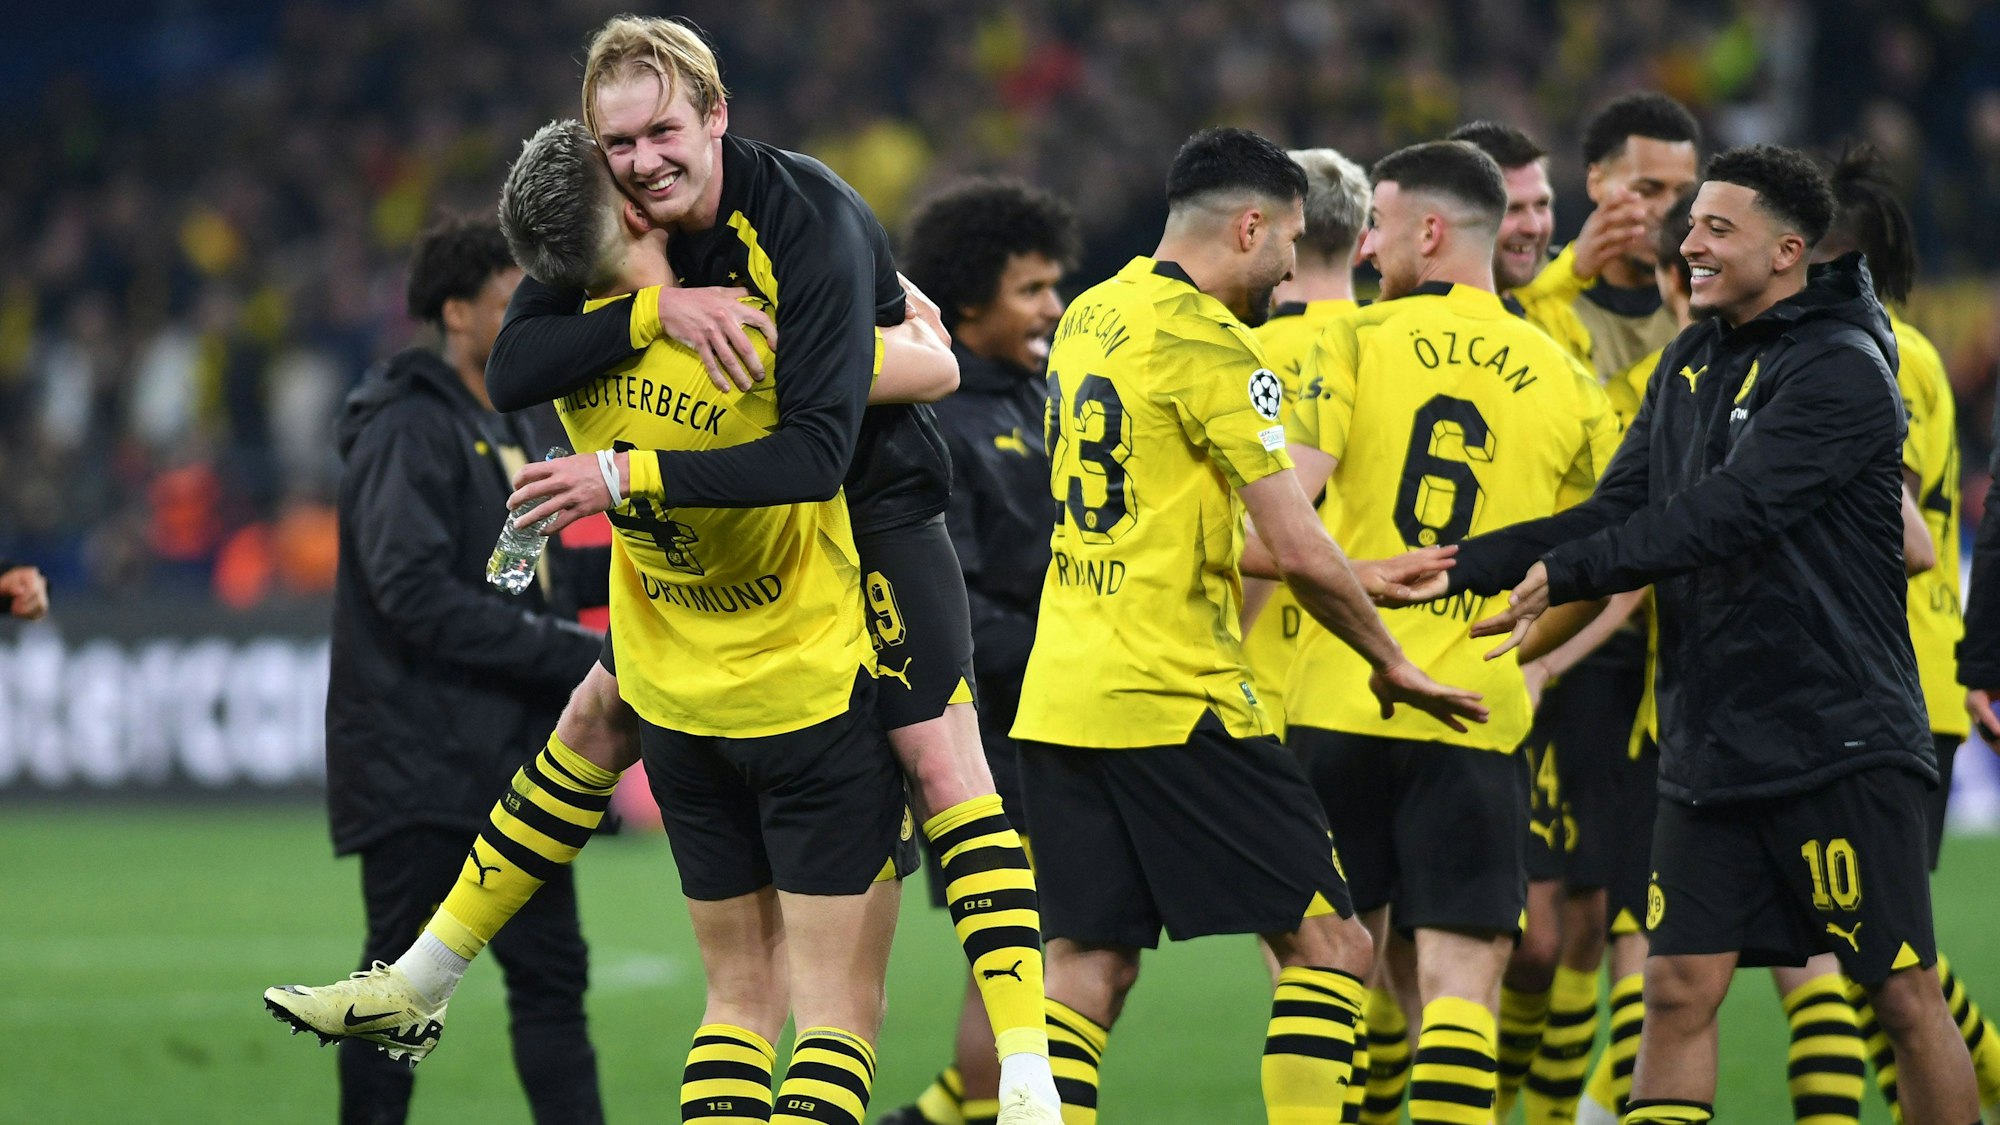 Jubel in Dortmund: Torschütze Julian Brandt feiert zusammen mit Nico Schlotterbeck. Nach dem Dortmunder 4:2-Sieg gegen Atletico Madrid sorgte eine Szene für Empörung.